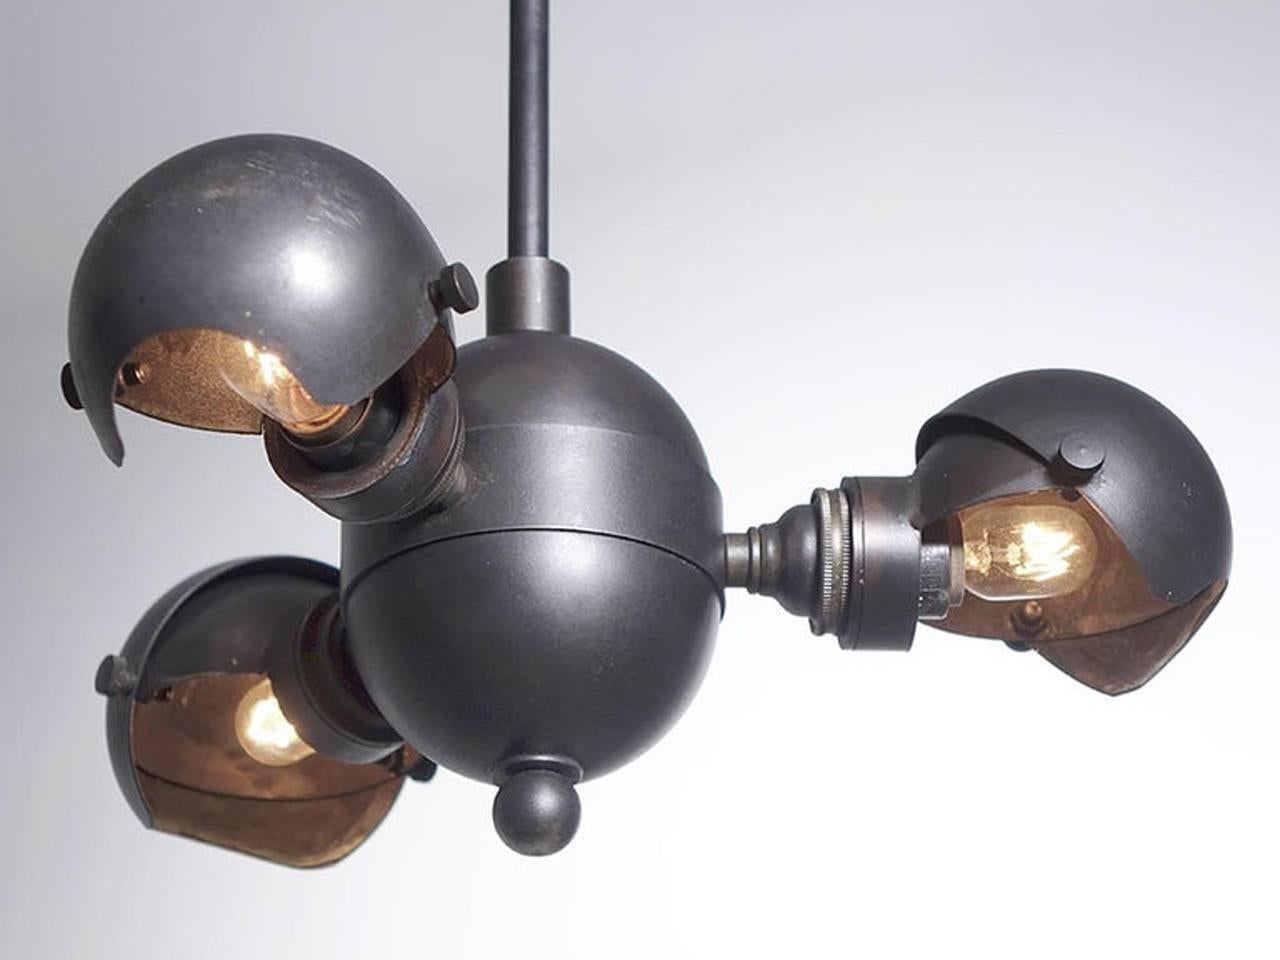 Diese Lampe aus Messing ist ein absolutes Unikat. Es wurde von August Haarstick im Stil des Jugendstil-Dekos inspiriert. In der Mitte befindet sich eine Kugel, die die Achse für drei Satelliten-Klappkugeln ist. Jede Haube funktioniert wie eine